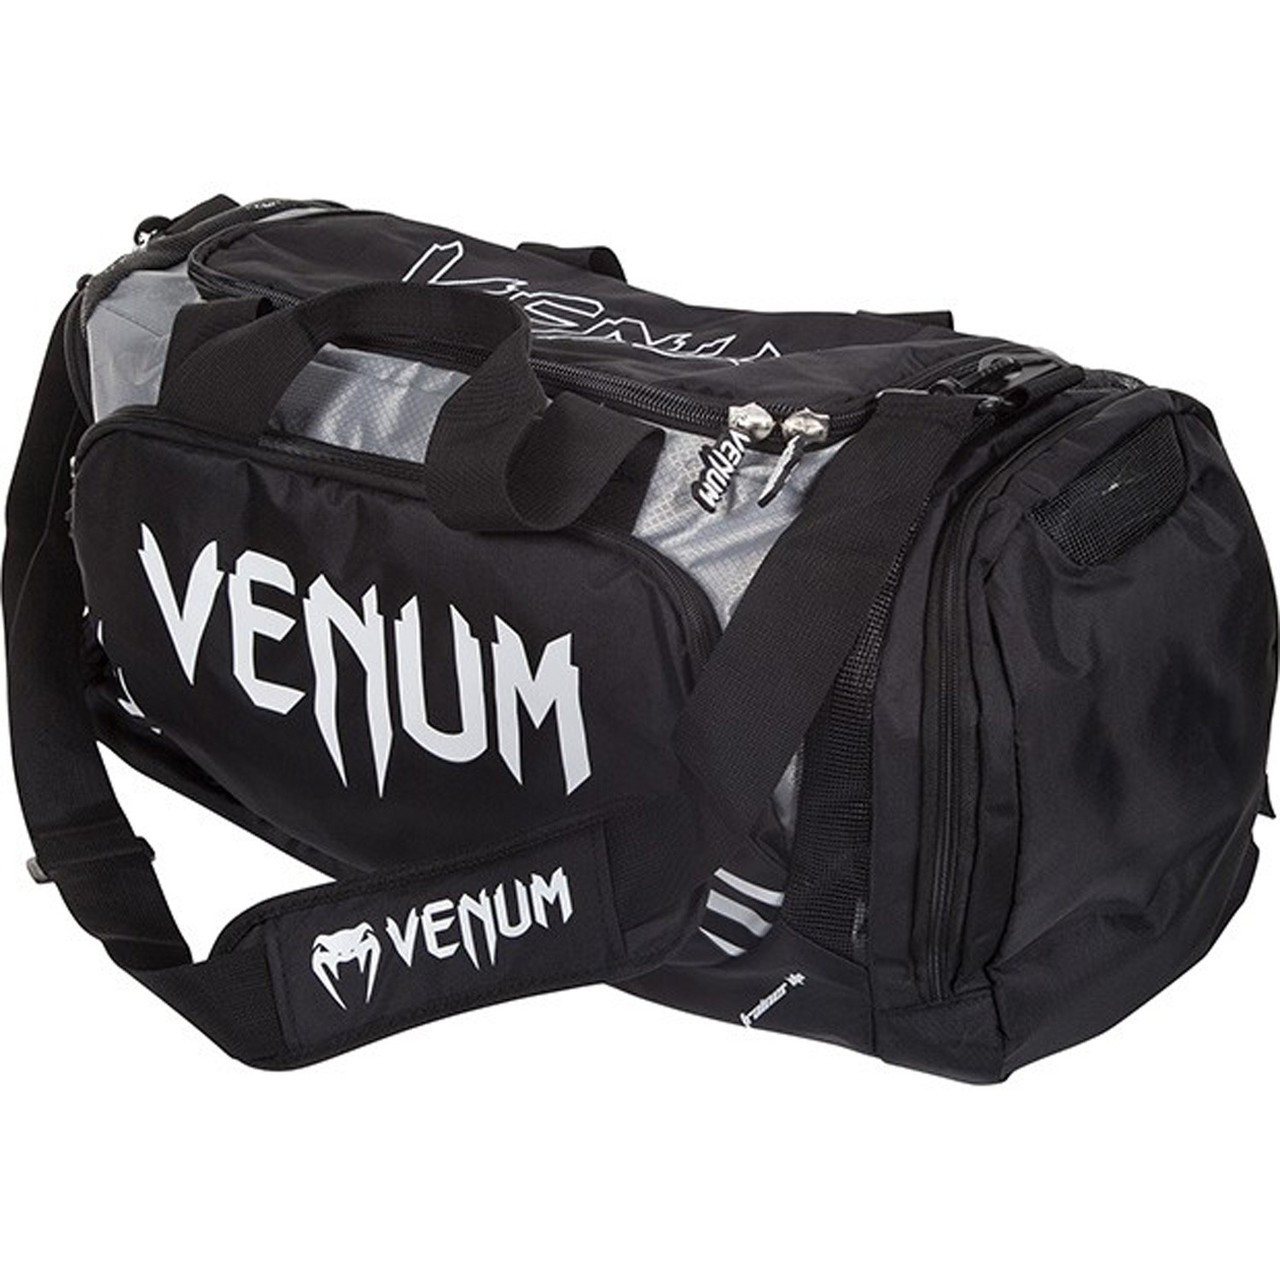 Venum Trainer Lite MMA & BJJ Gym Bag - Black | Duffle bag for MMA and Jiu  Jitsu